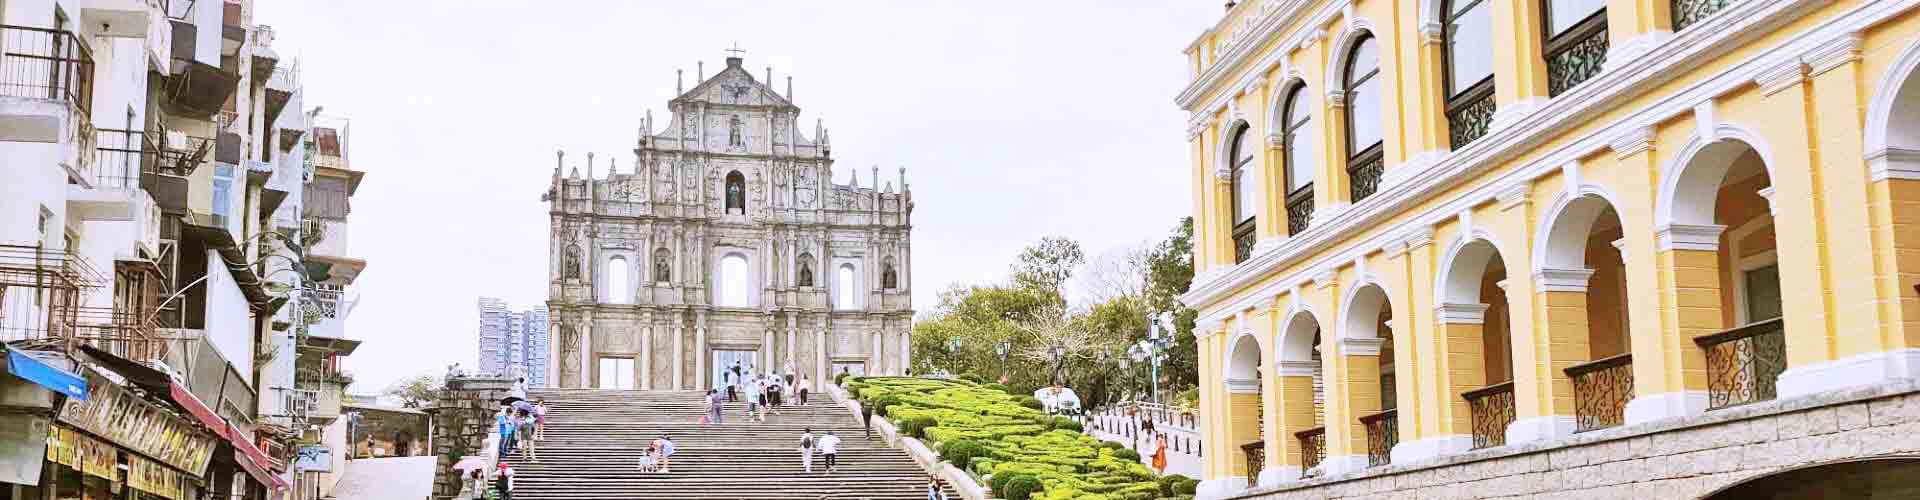 ruines de la cathédrale Saint-Paul Macao